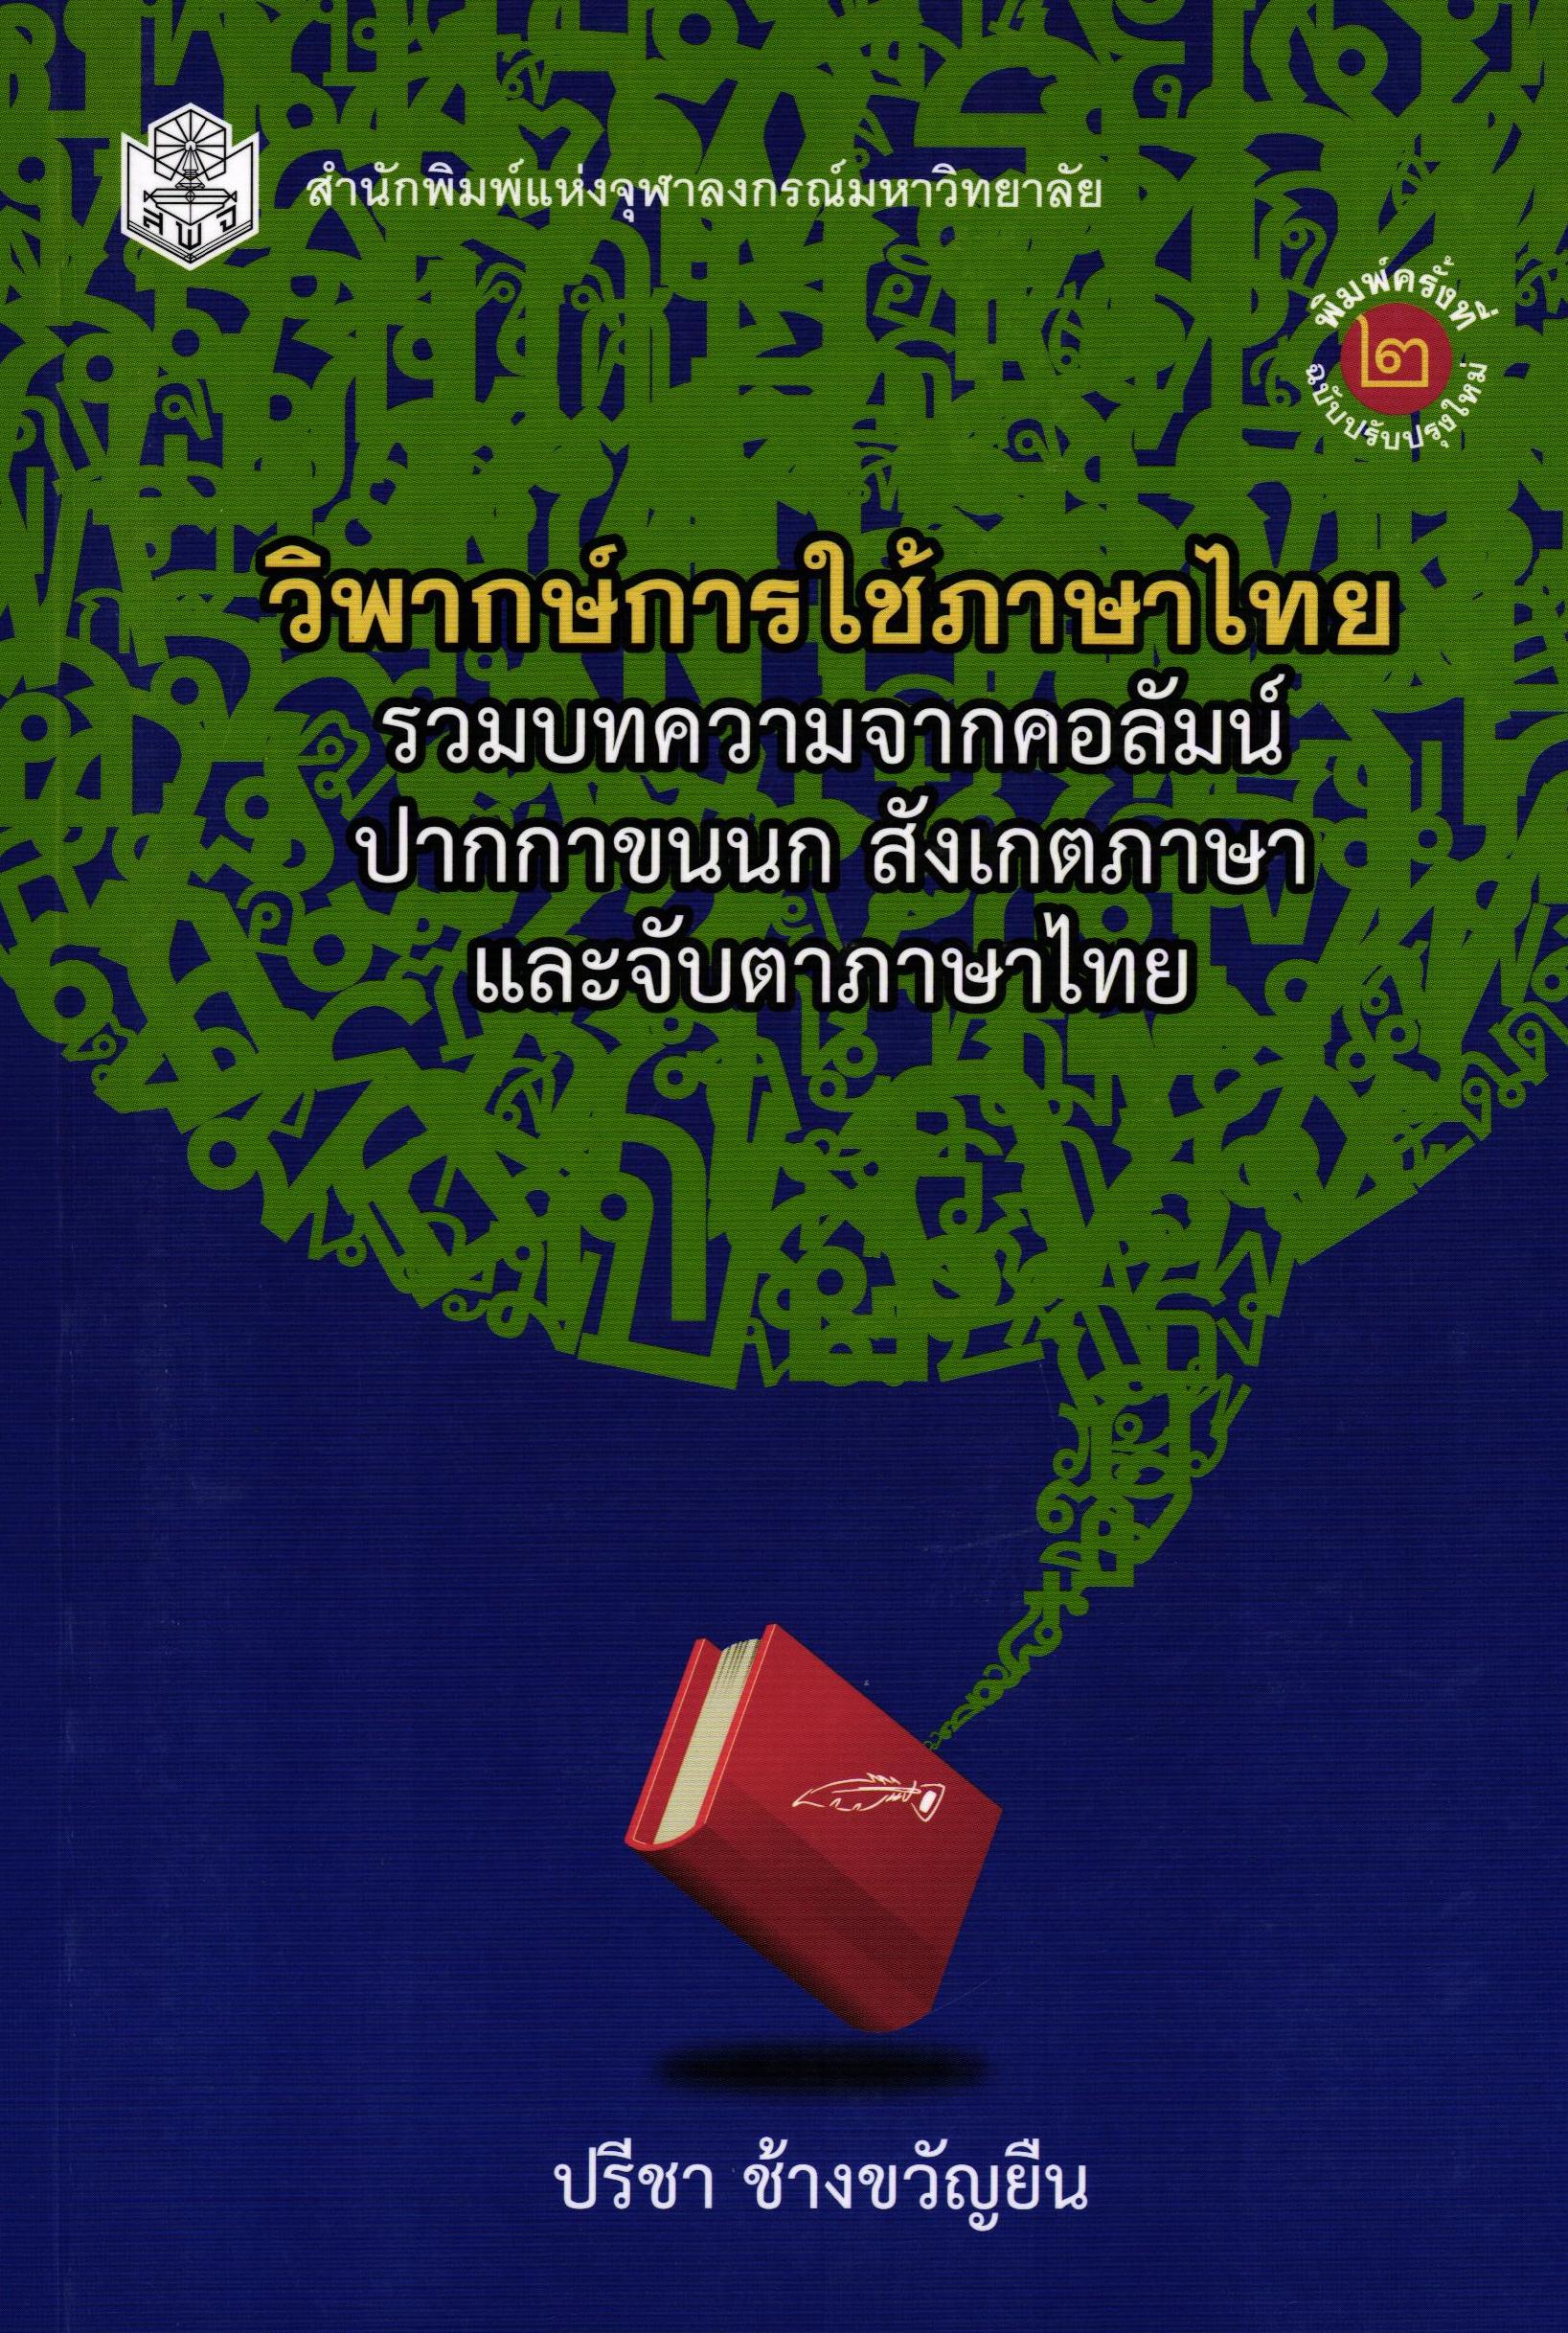 วิพากษ์การใช้ภาษาไทย : รวมบทความจากคอลัมน์ปากกาขนนก สังเกตภาษา และจับตาภาษาไทย